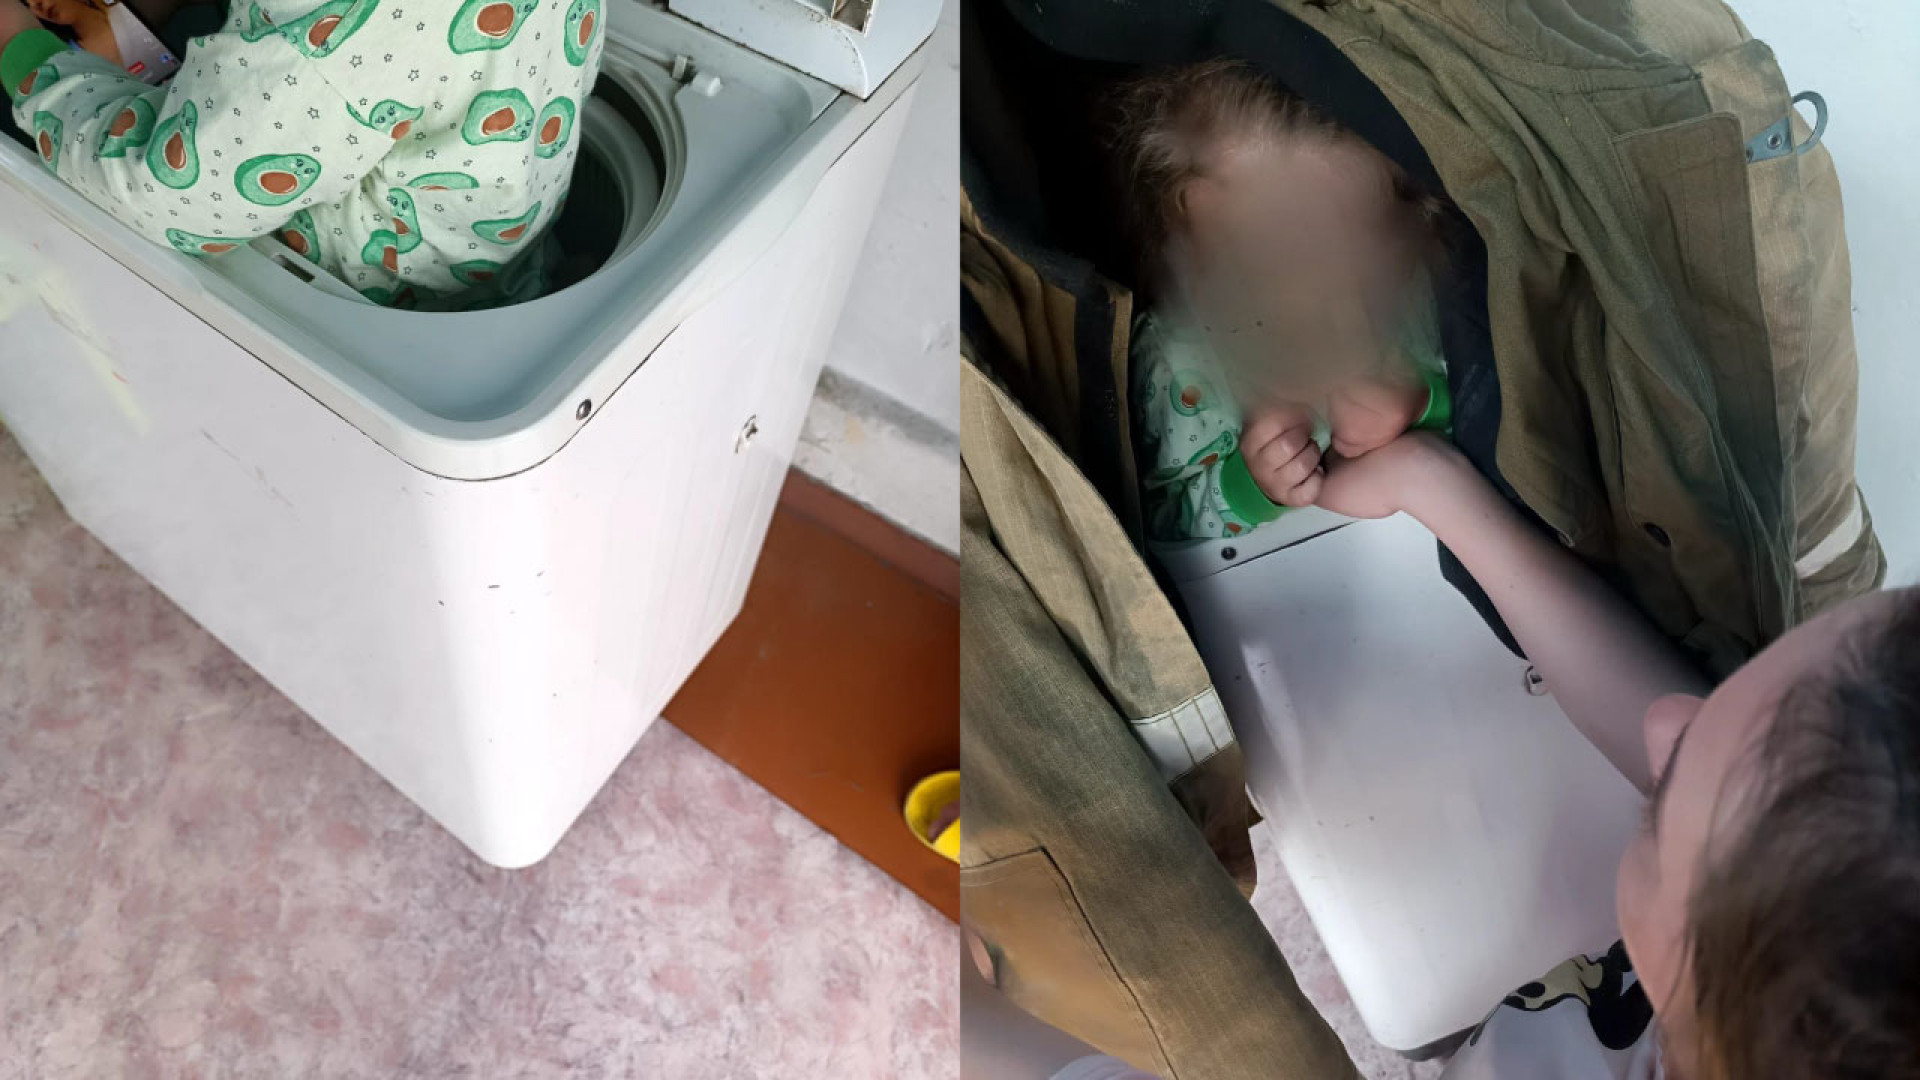 Девочка застряла в стиральной машине в Павлодарской области: 30 мая 2023,  14:58 - новости на Tengrinews.kz